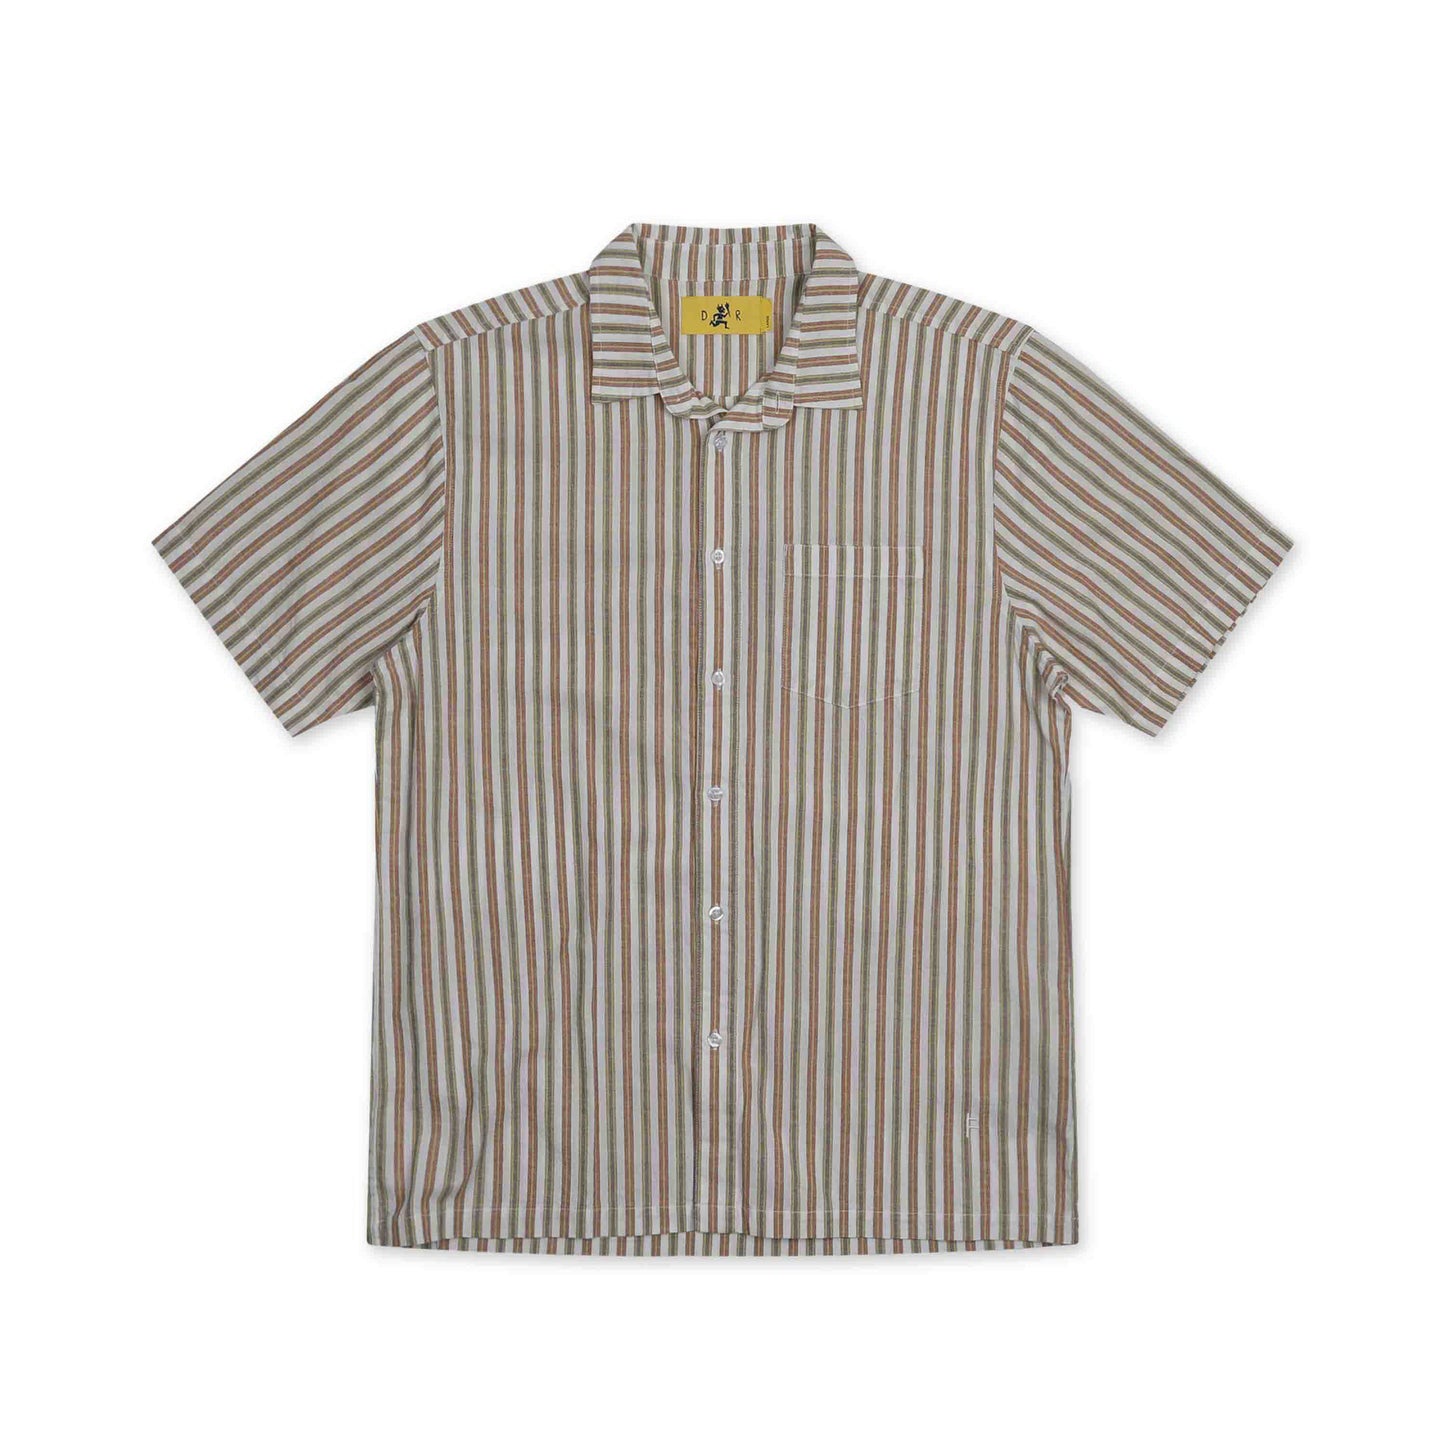 Reynolds Striped S/S Shirt - Ochre